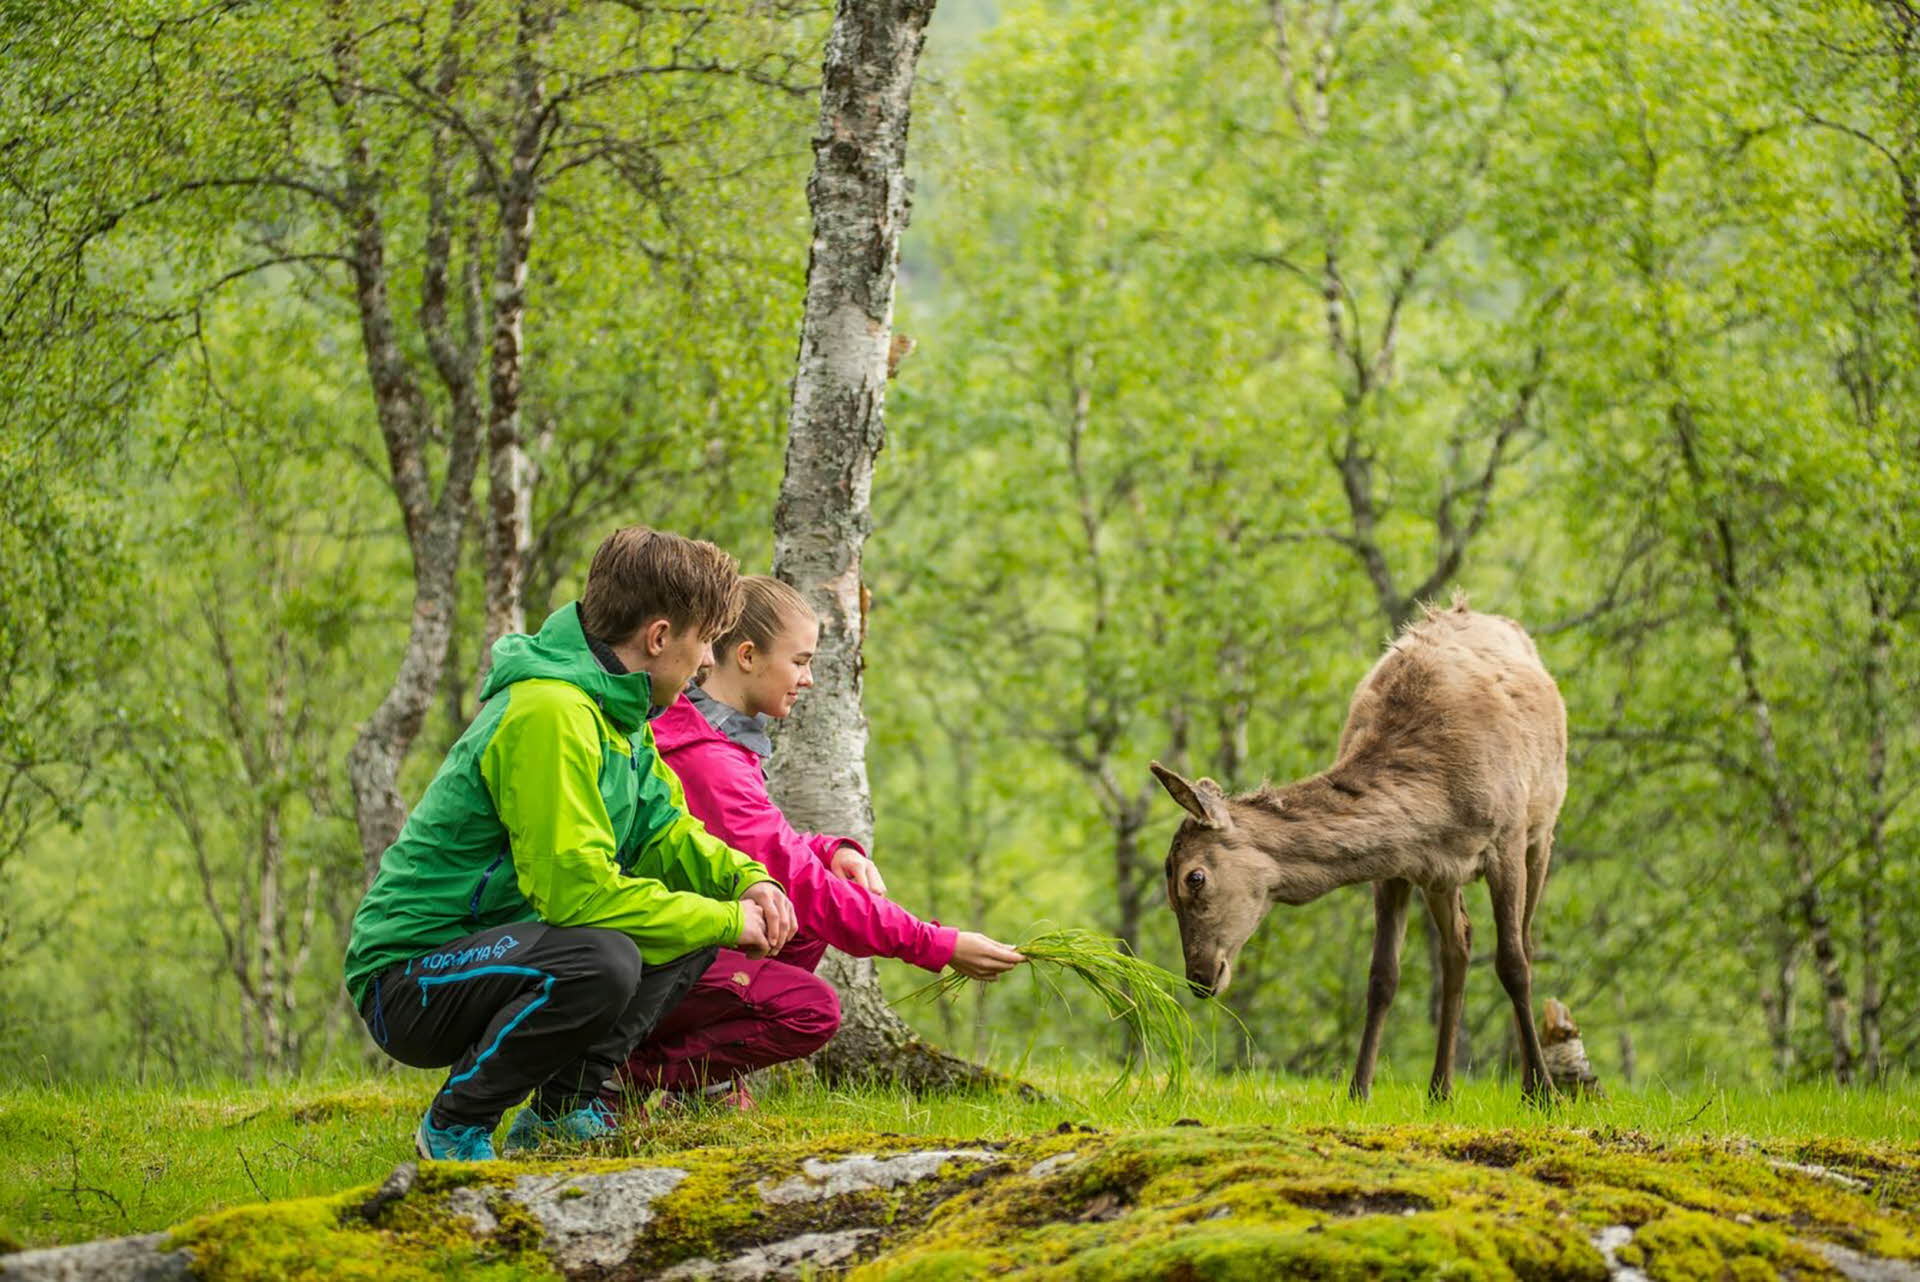 森の中、緑のジャケットの少年とピンクのジャケットの少女が、シカのそばにかがんでいる。